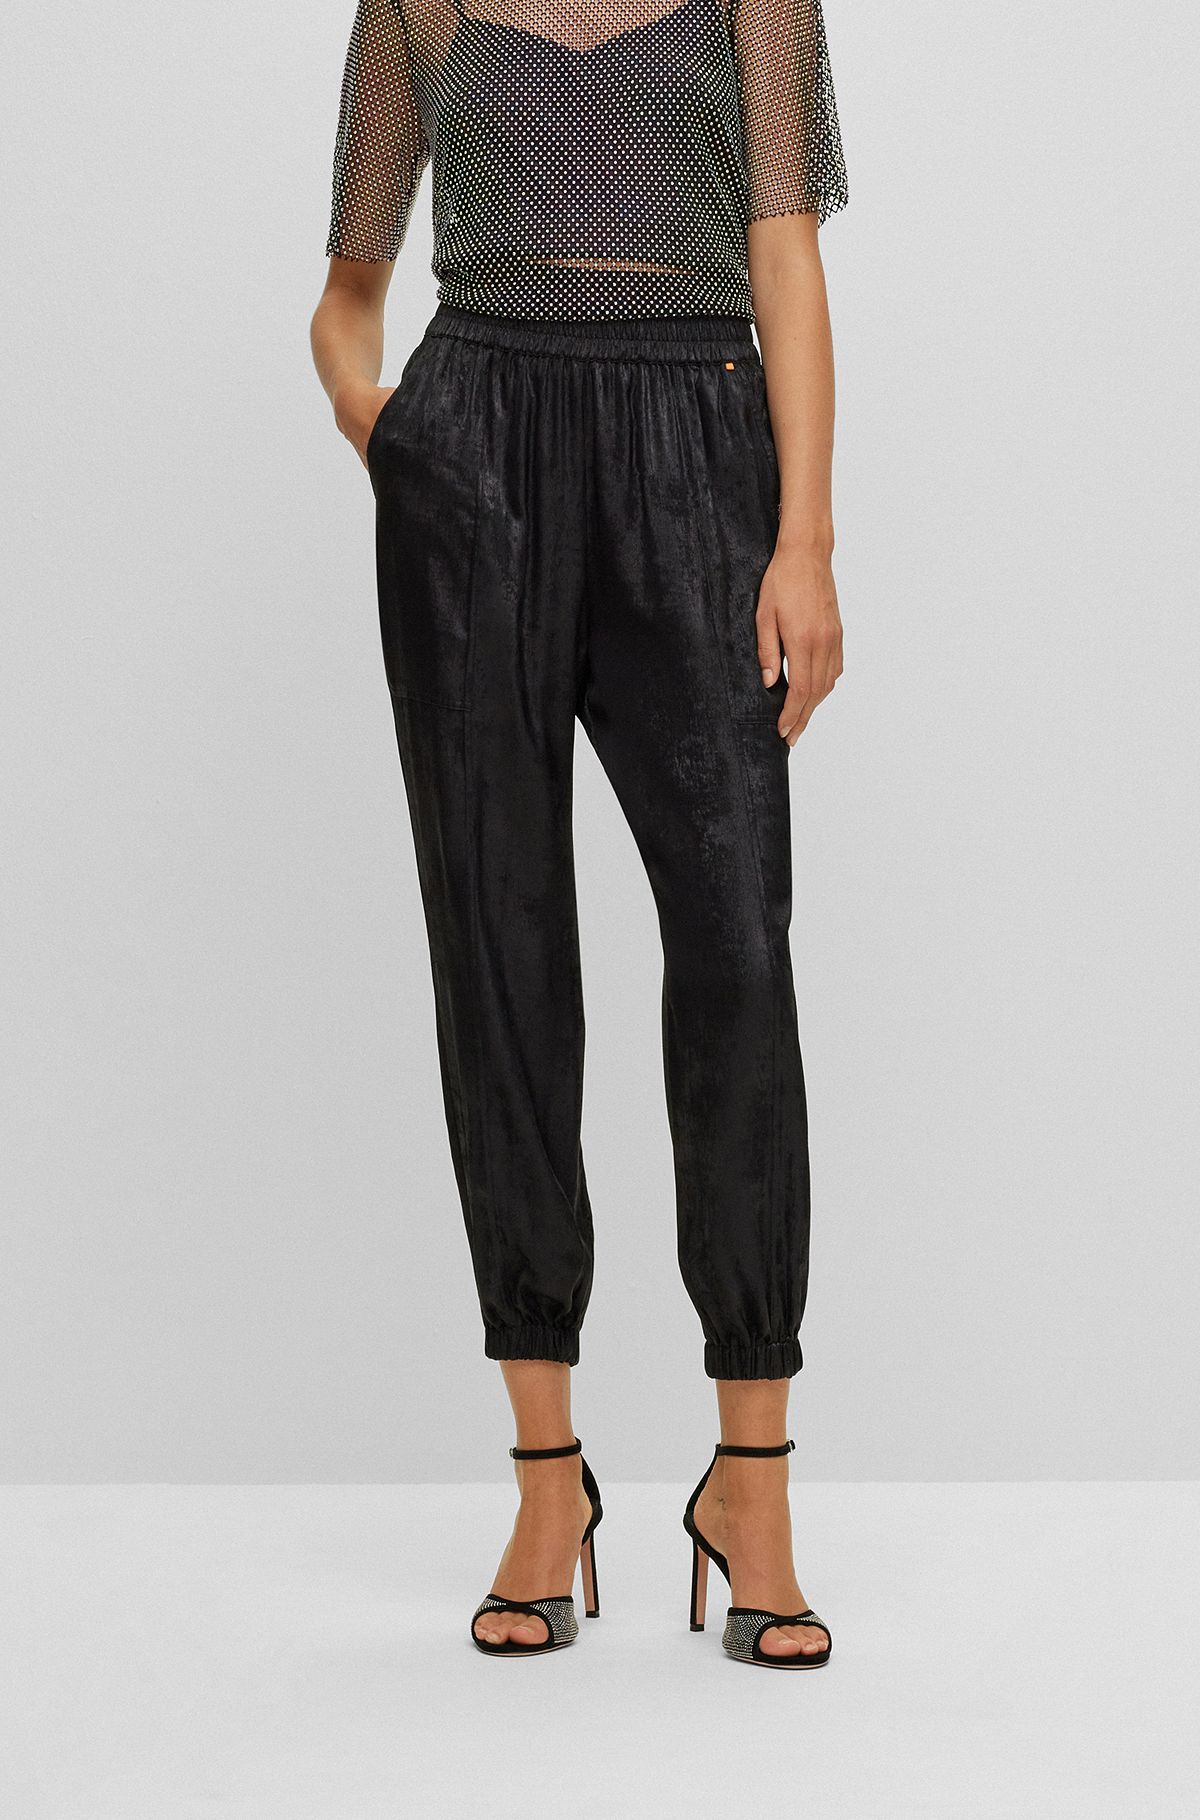 Baggy-fit broek met print in metallic-look, Zwart